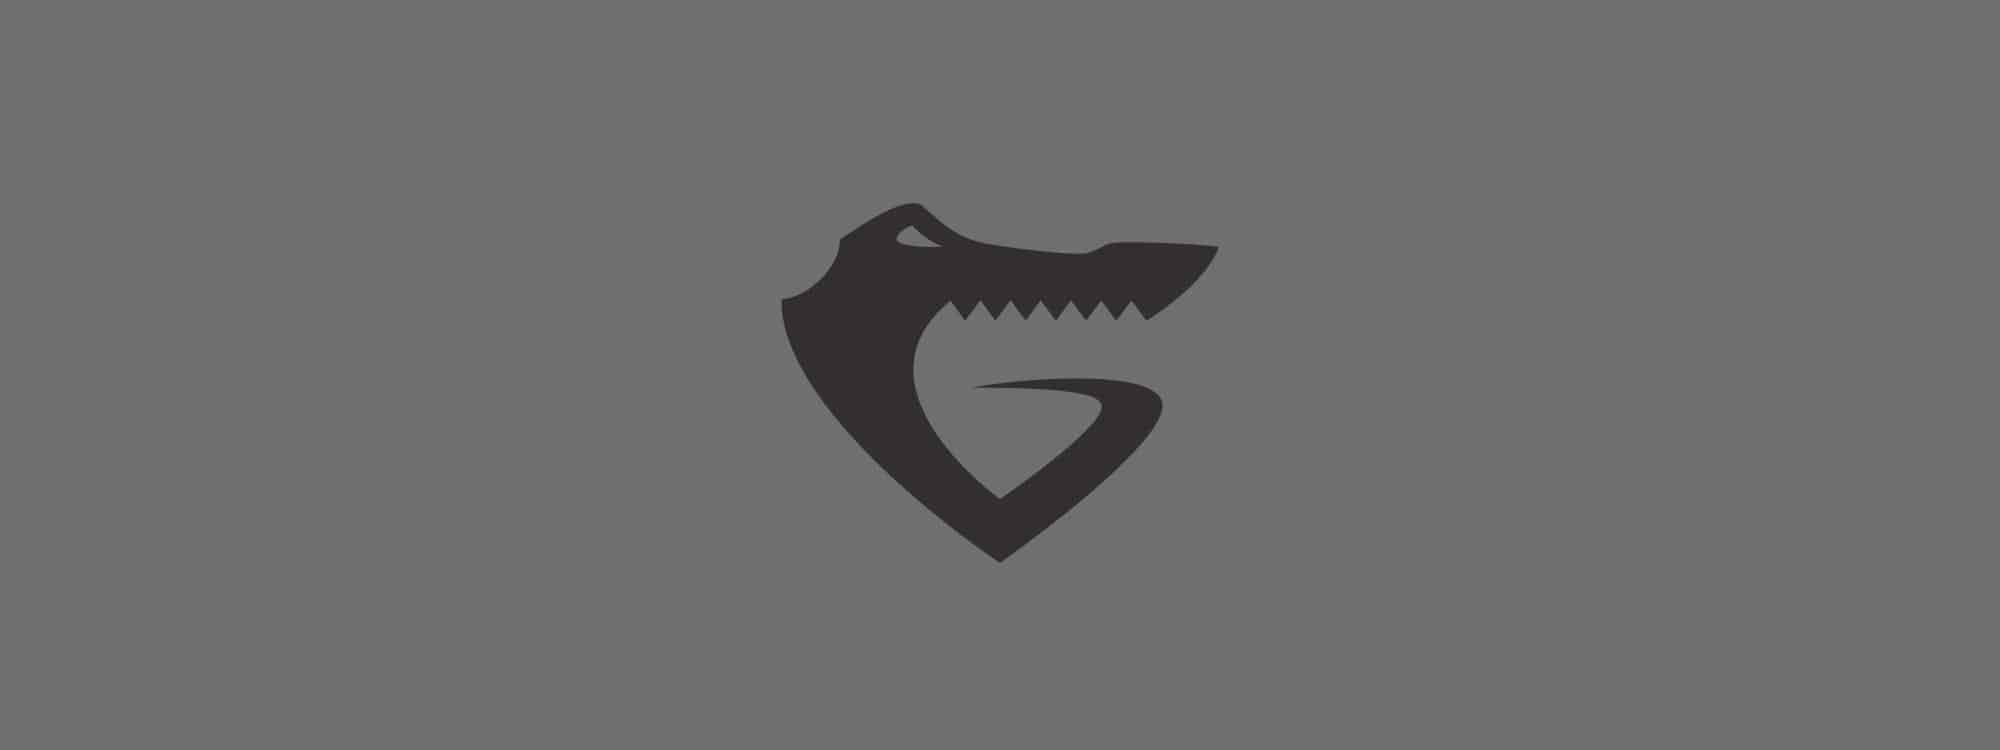 Gym Logo Design for GymGator